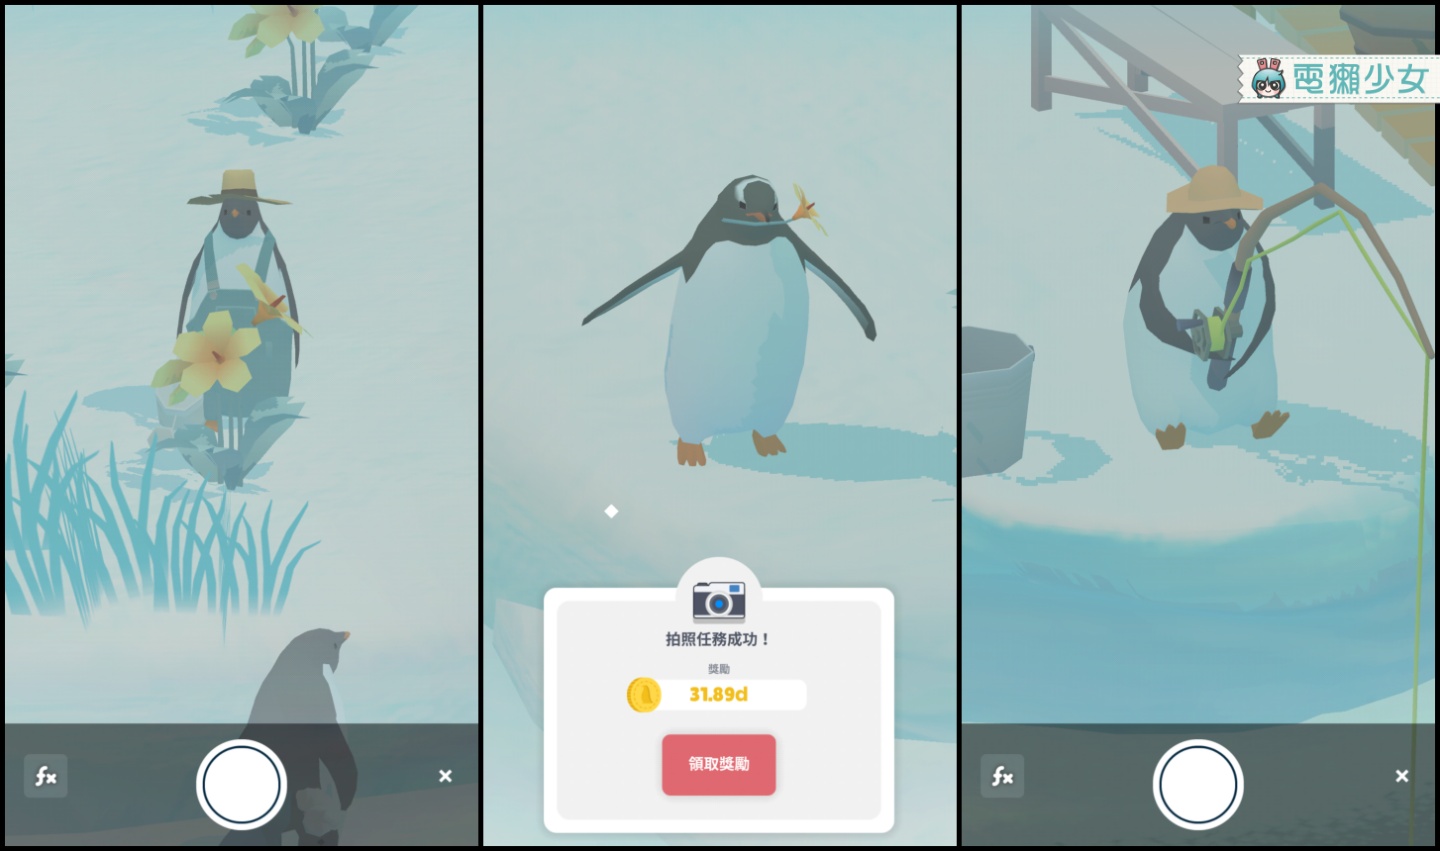 超Q企鵝晃掉你的煩惱～可愛療癒手遊App『 企鵝島 』Android / iOS